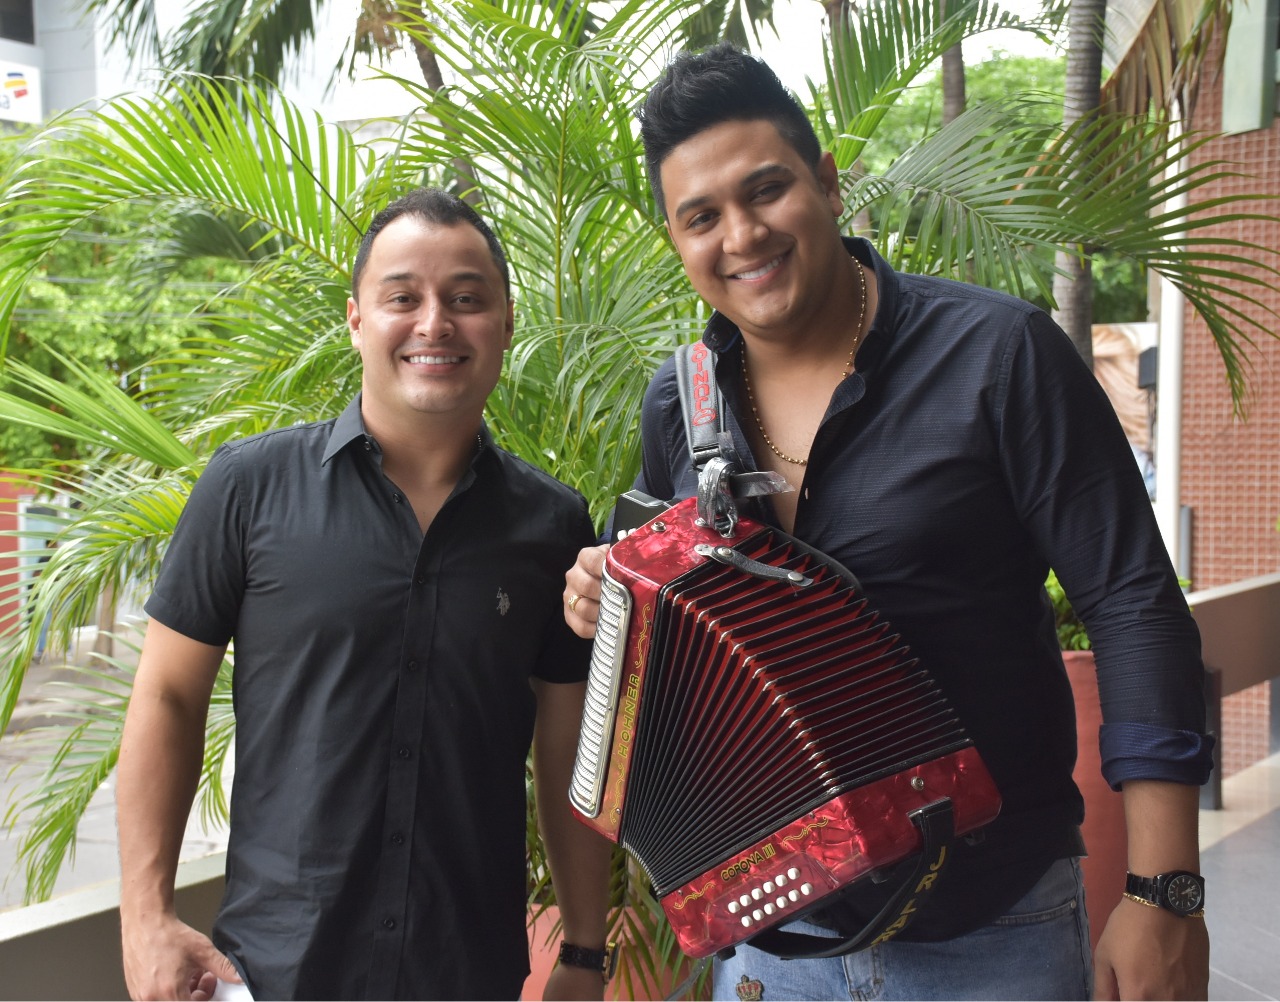 Cristian Plata y Junior Larios, pareja vallenata que se ha convertido en expositora del folclor en el país.

ARCHIVO